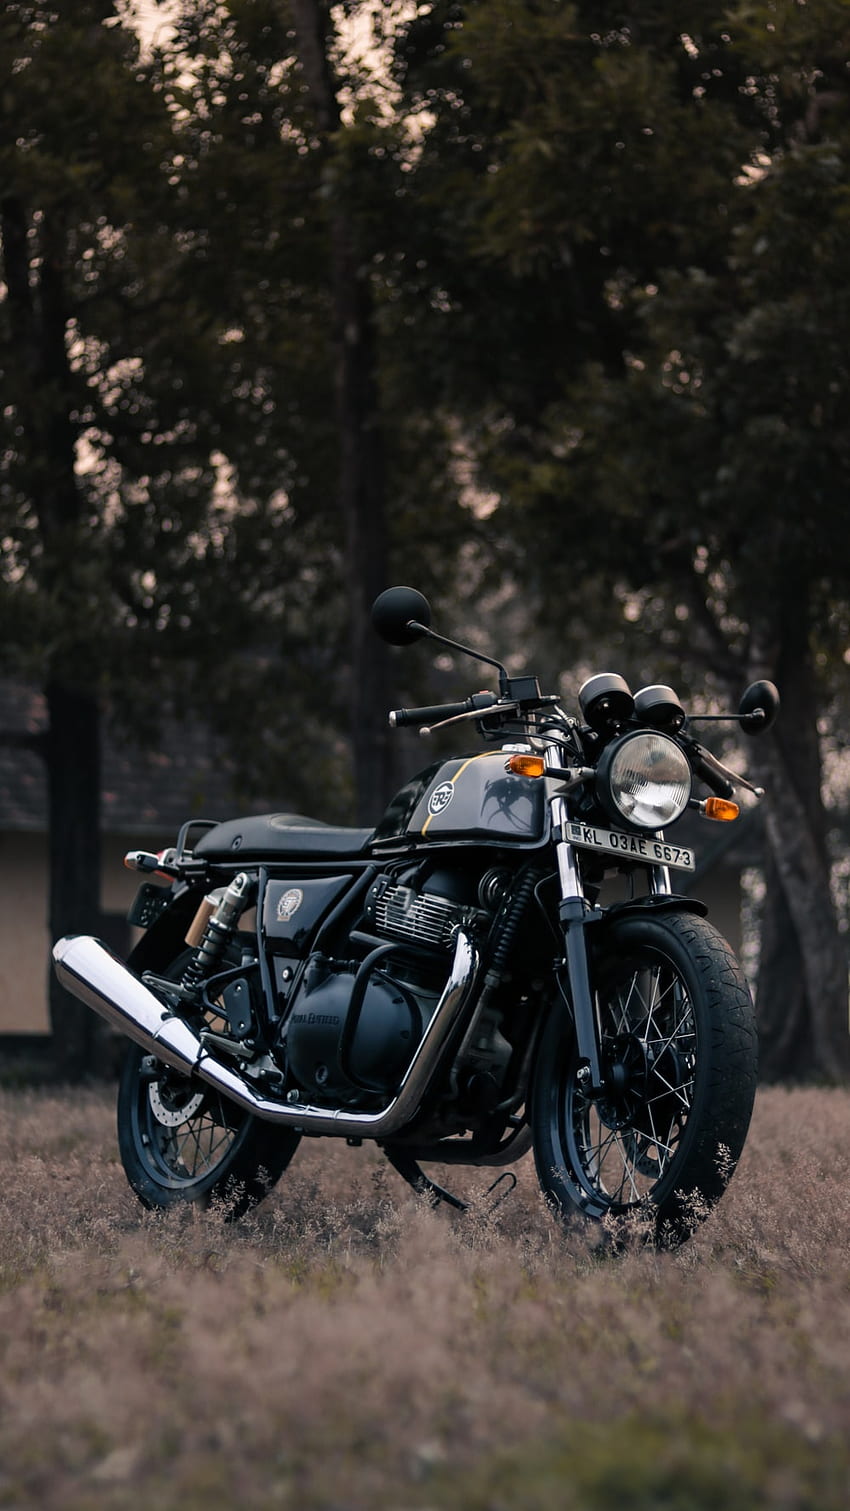 black and silver cruiser motorcycle – Royal enfield rides, Royal Enfield Interceptor 650 HD phone wallpaper